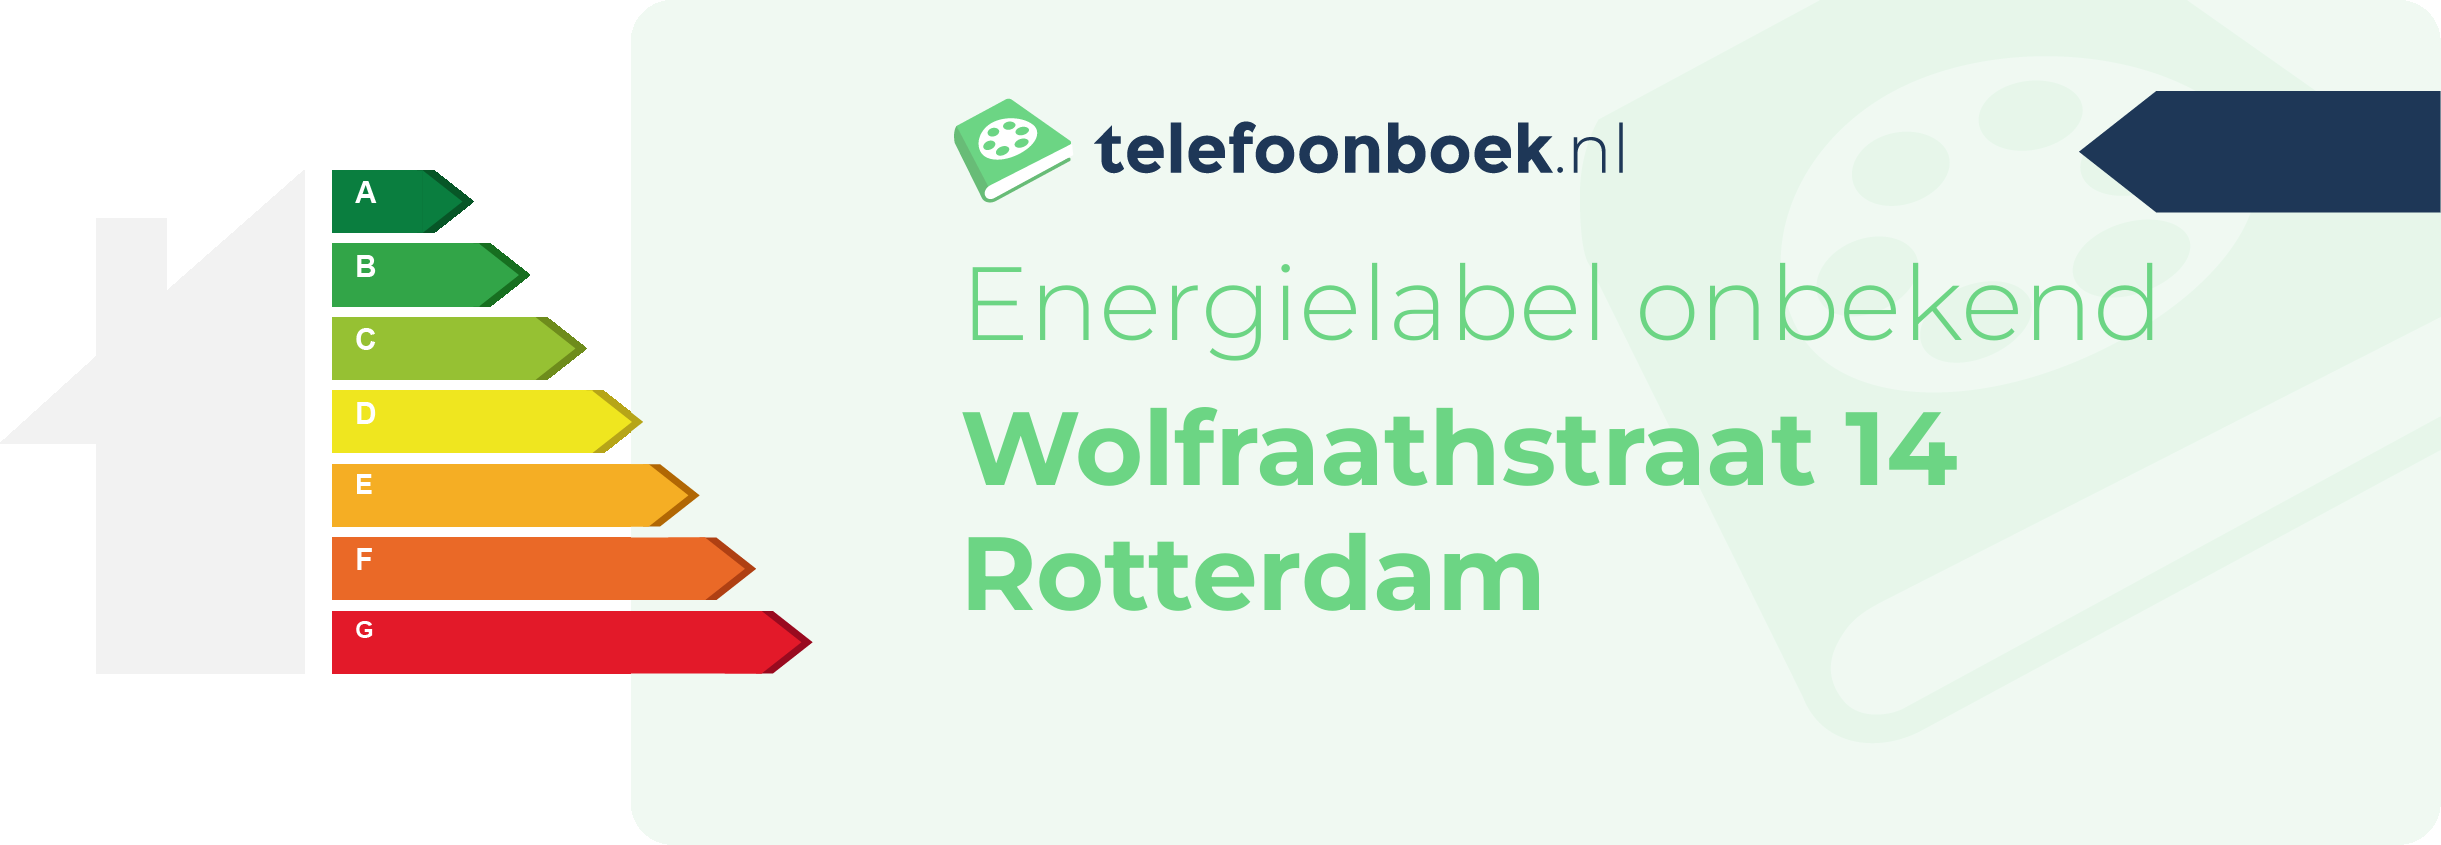 Energielabel Wolfraathstraat 14 Rotterdam